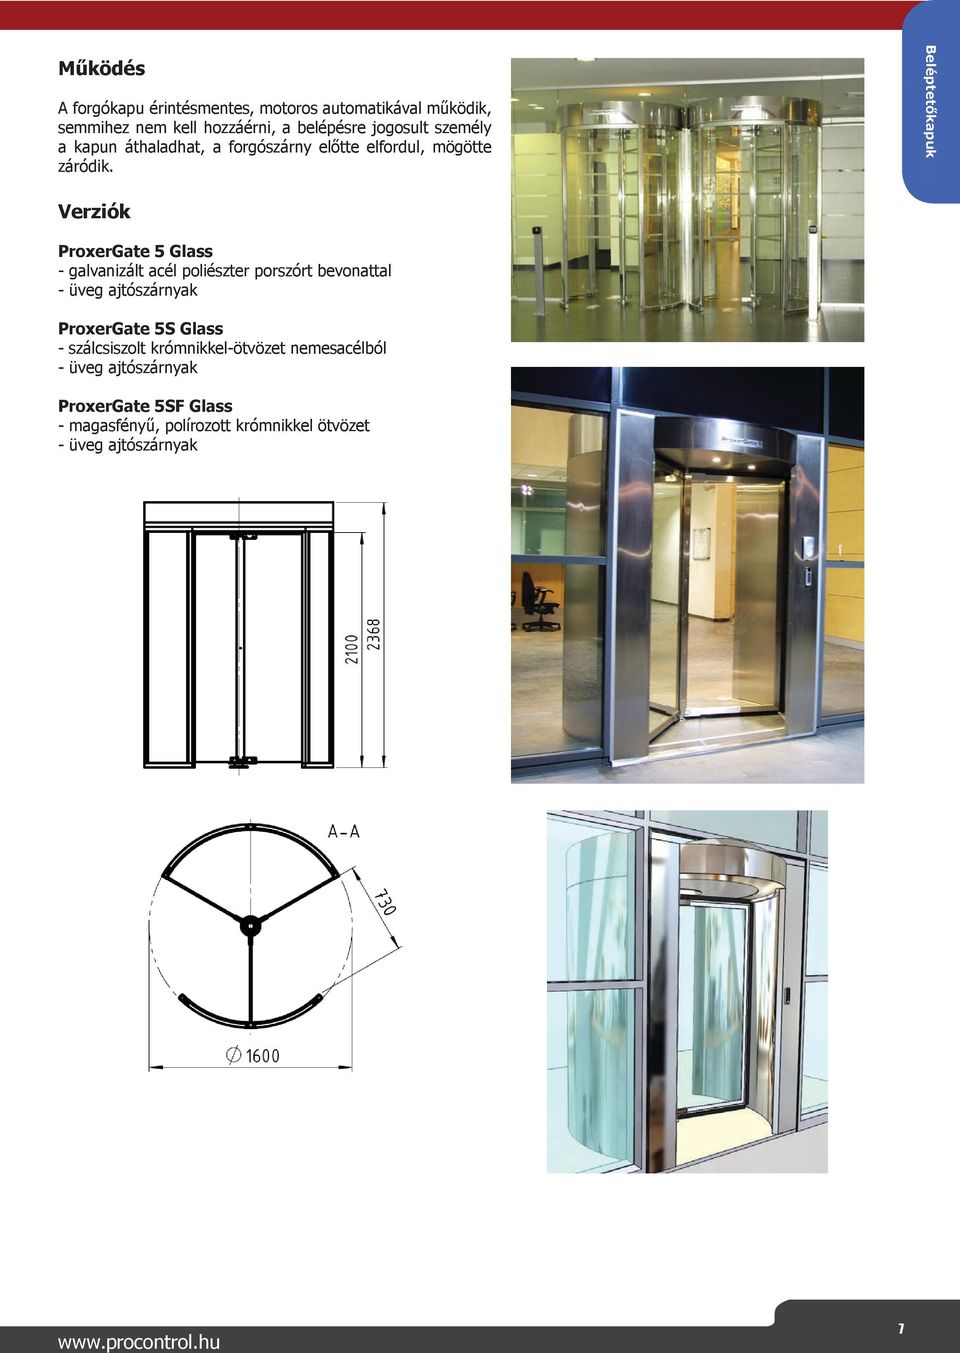 Beléptetőkapuk Verziók ProxerGate 5 Glass - galvanizált acél poliészter porszórt bevonattal - üveg ajtószárnyak ProxerGate